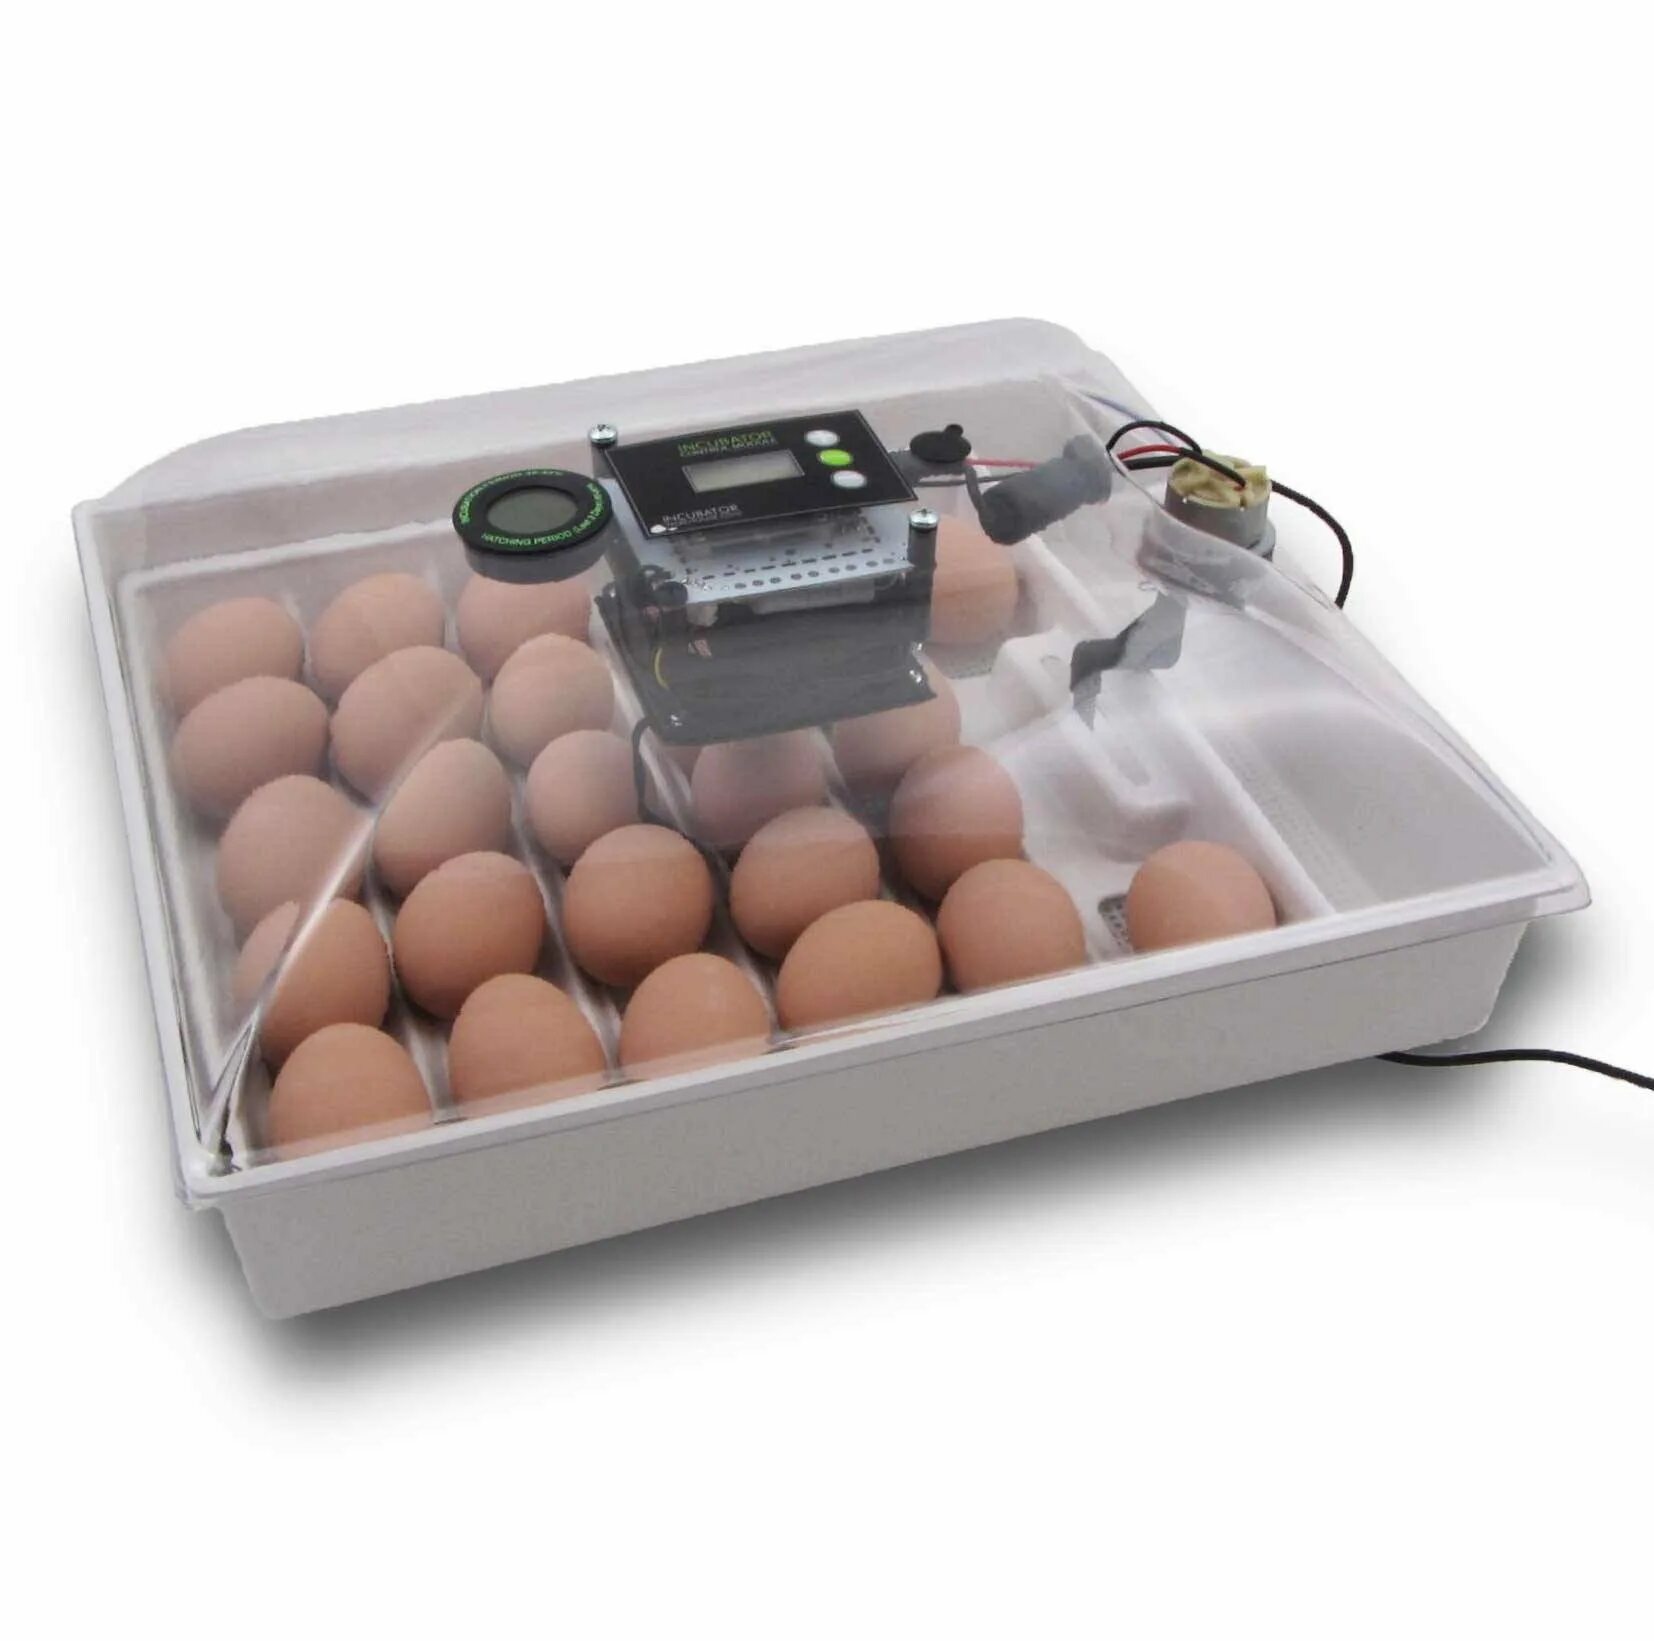 Инкубаторы купить отзывы. Инкубатор Egg incubator. Инкубатор FLORAFLEX incubator Kit. Инкубатор SITITEK 36. Кв400 binger инкубатор для яиц.